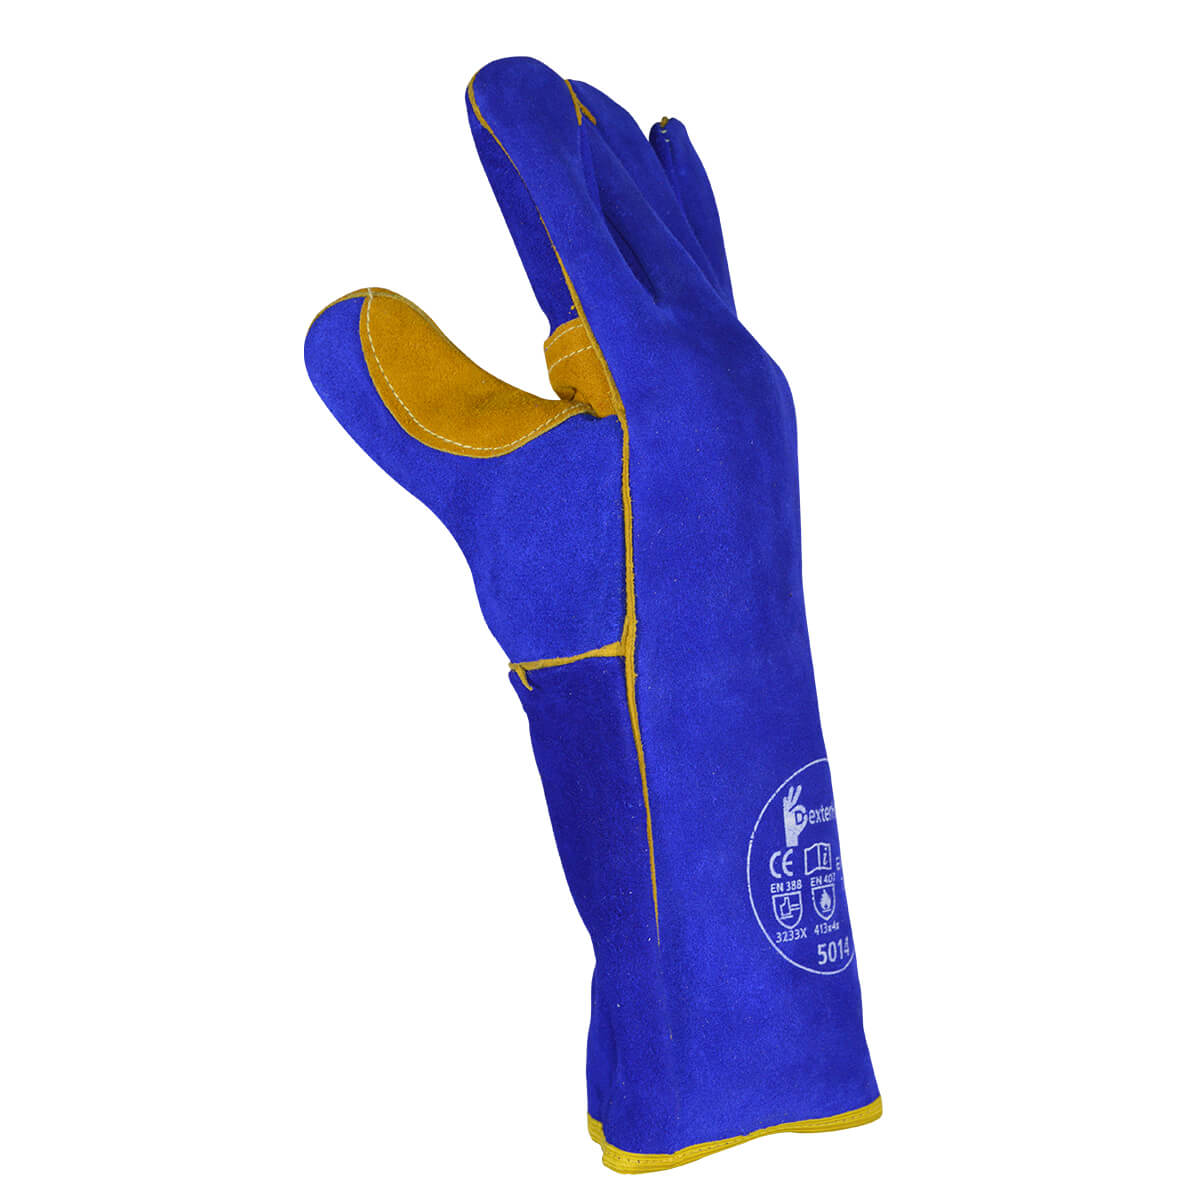 DEKOPRO guantes para soldar resistentes al calor, de piel forrada, color  azul, de 14 pulgadas para soldaduras mig, tig, asar, jardinería, acampar